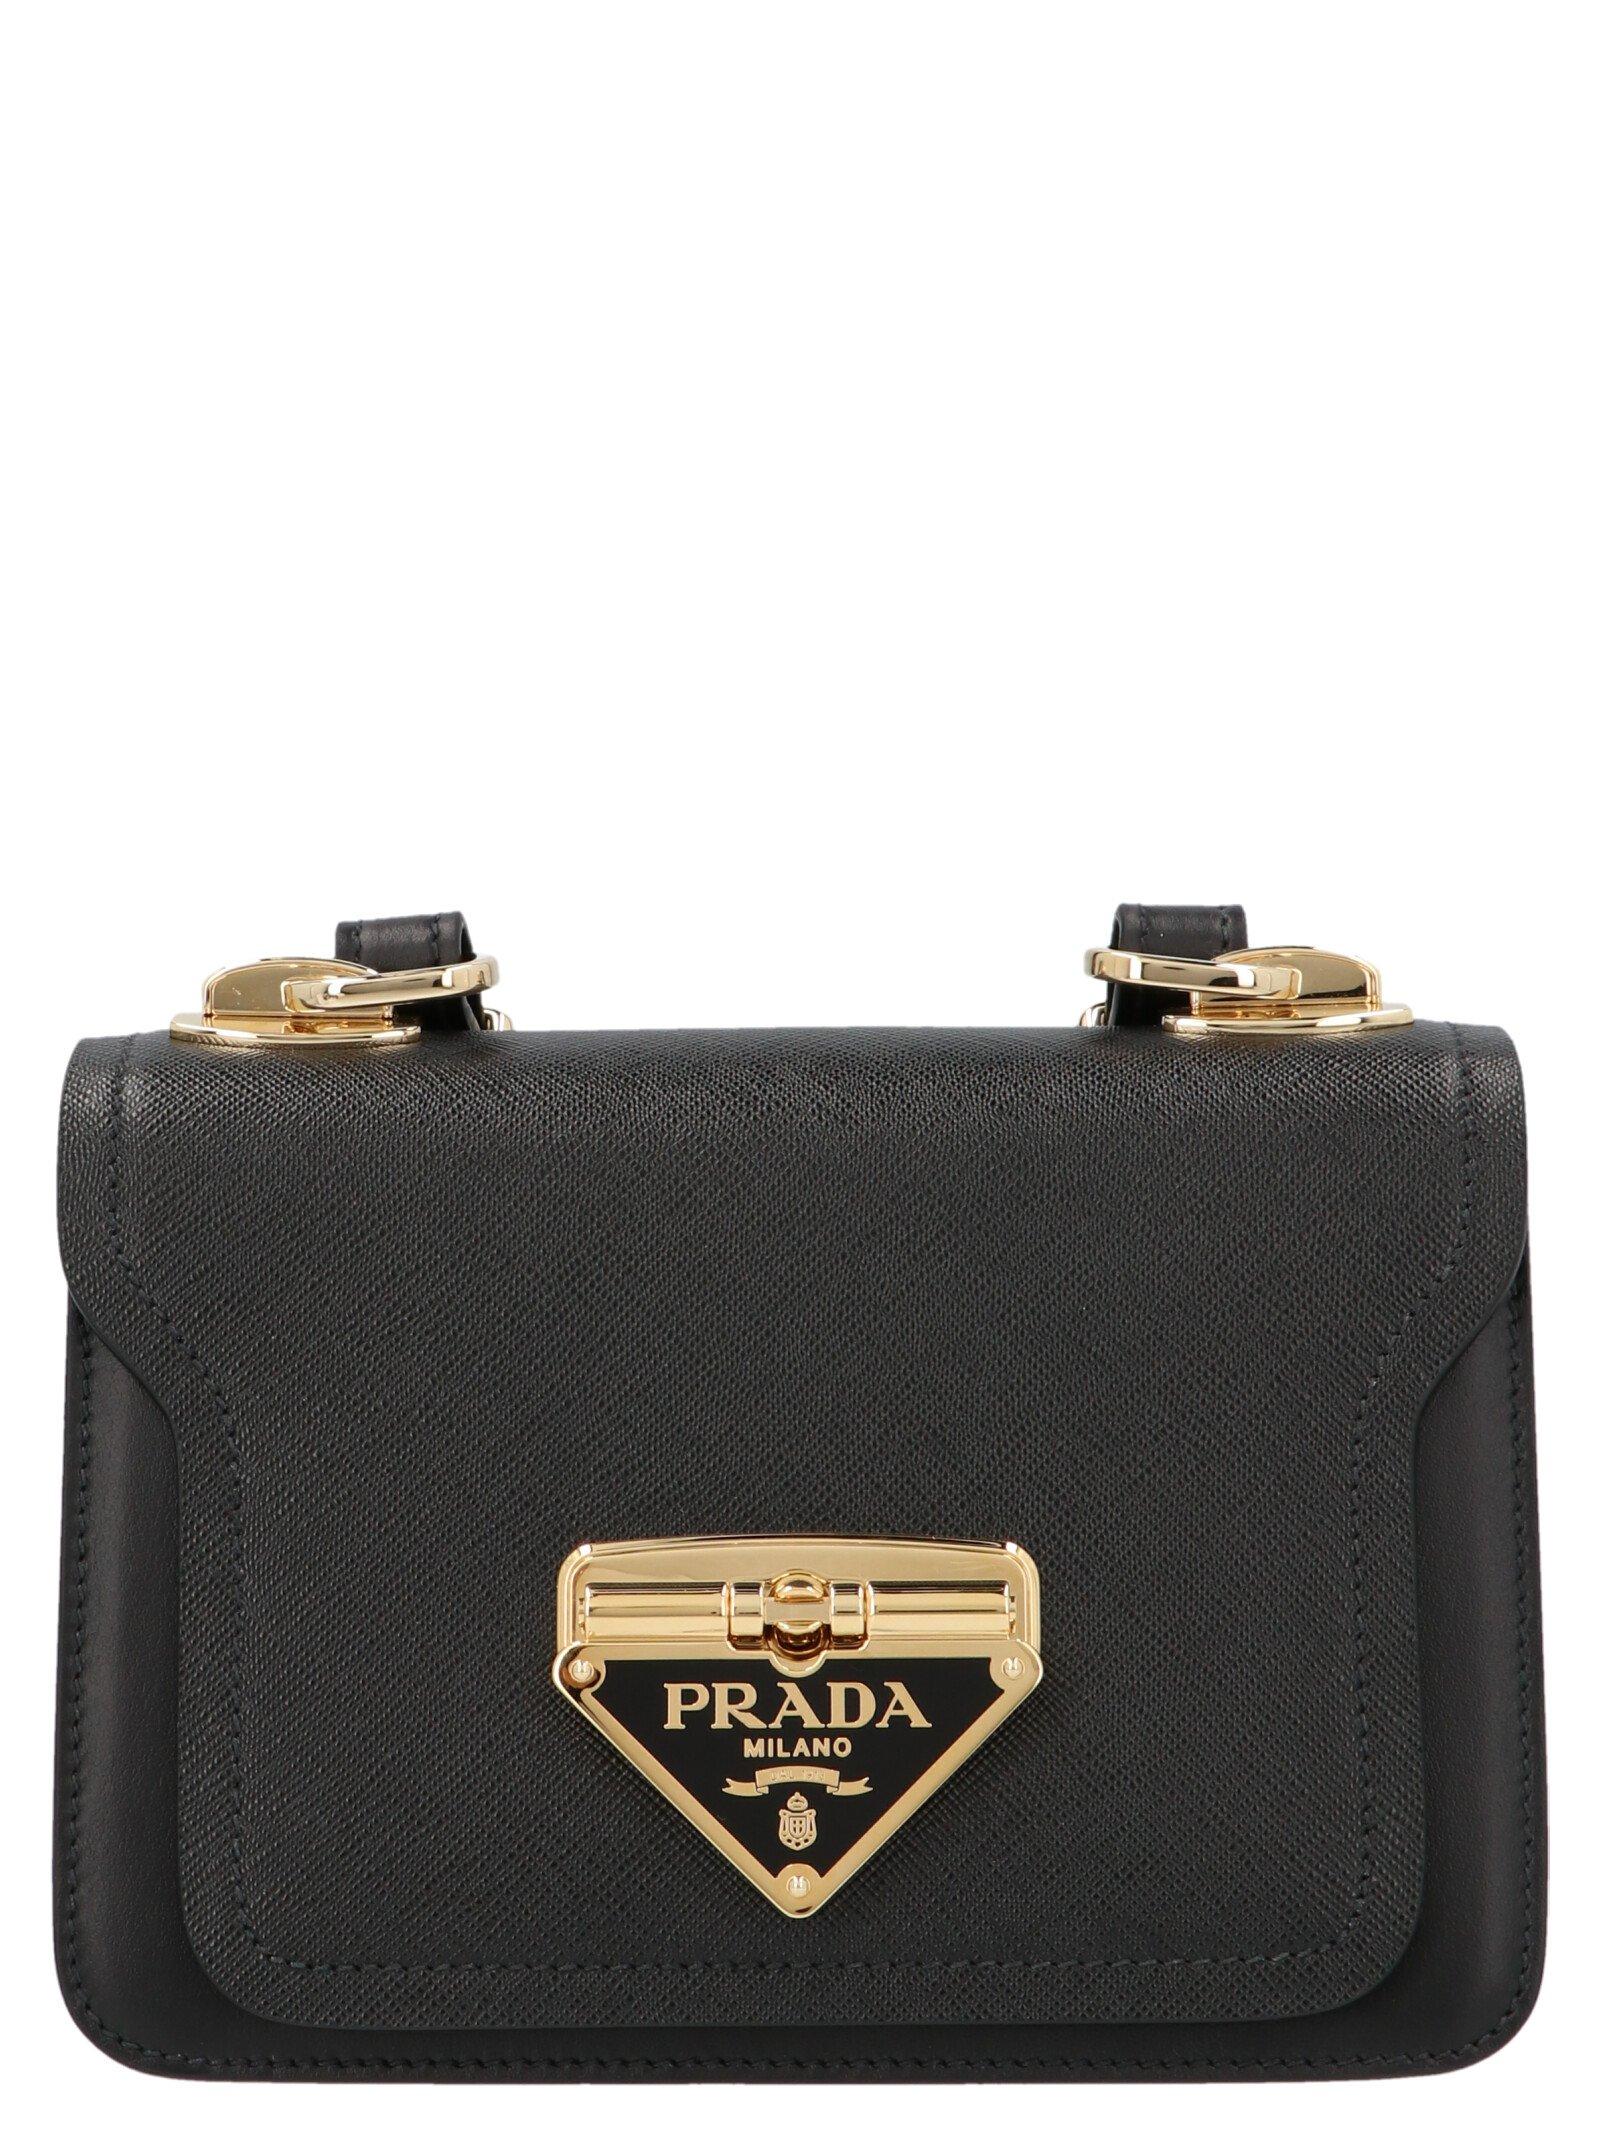 Prada Leather Triangle Logo Crossbody Bag in Black - Lyst